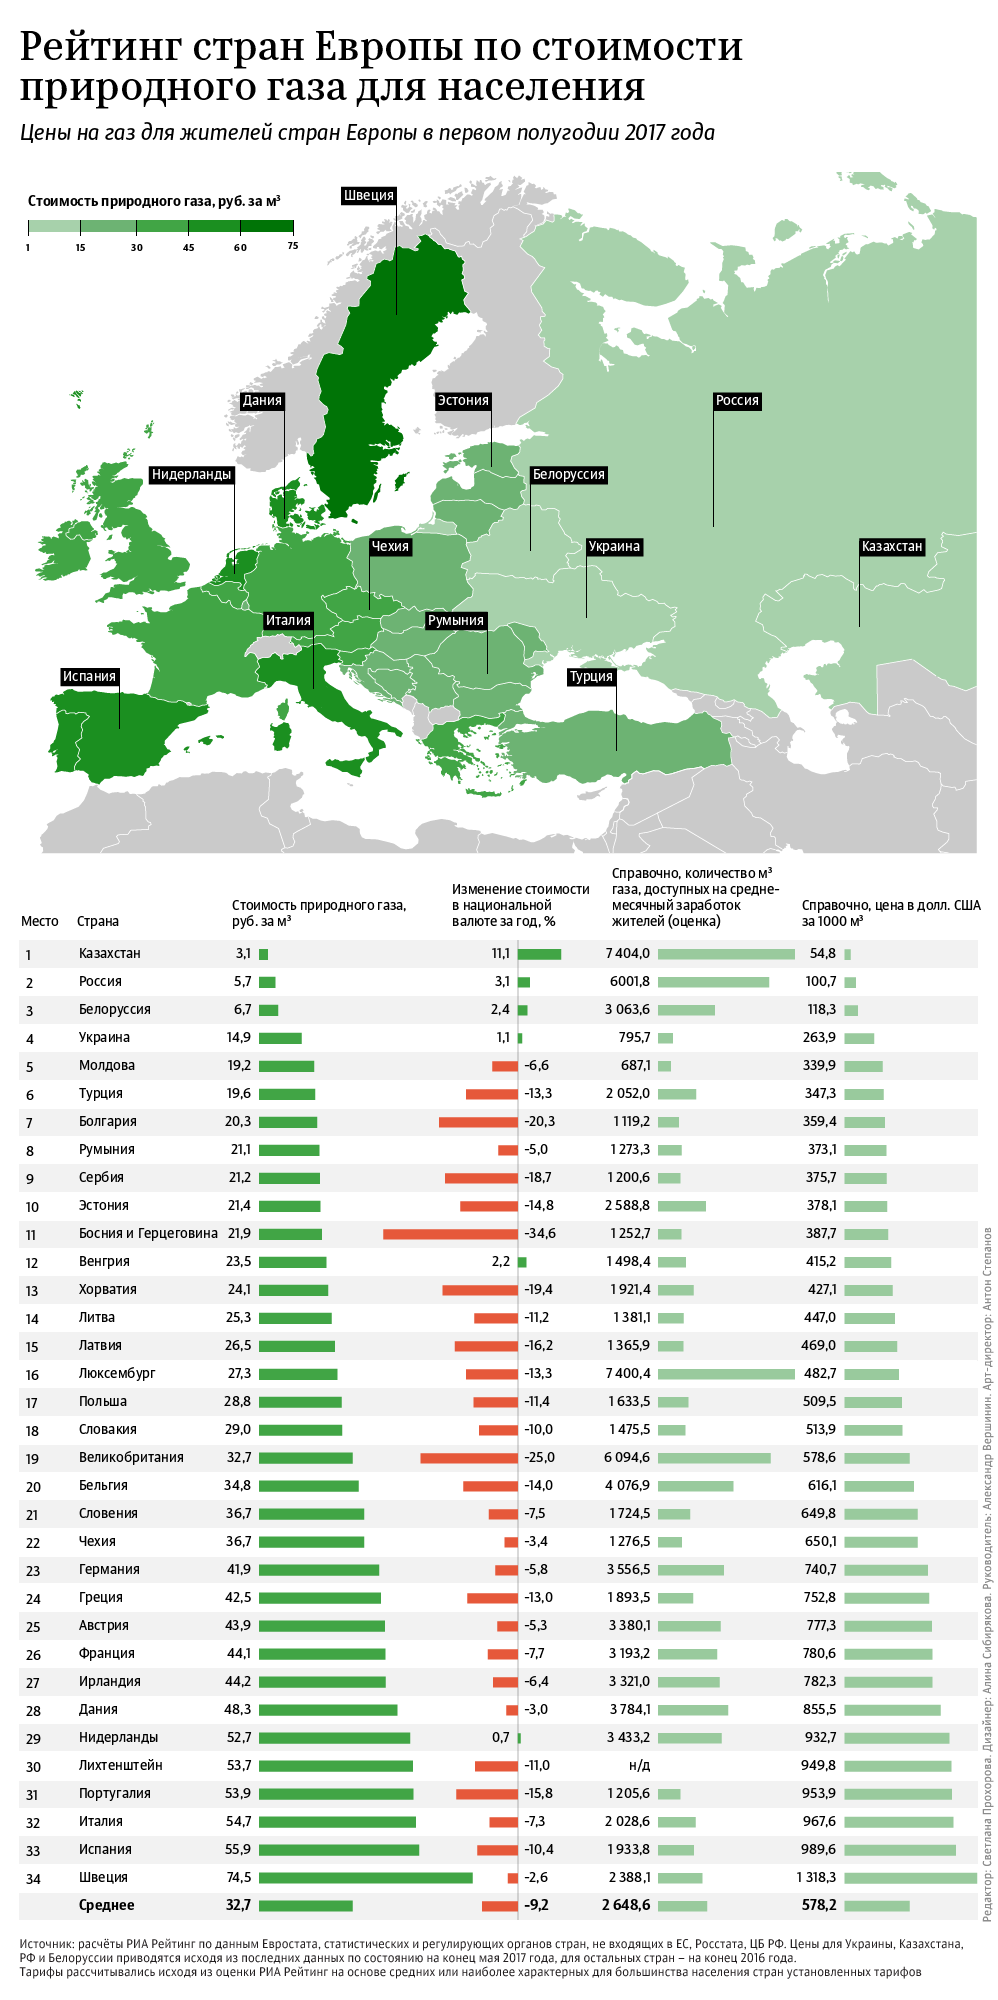 Стоимость газа для населения – рейтинг стран Европы 2017